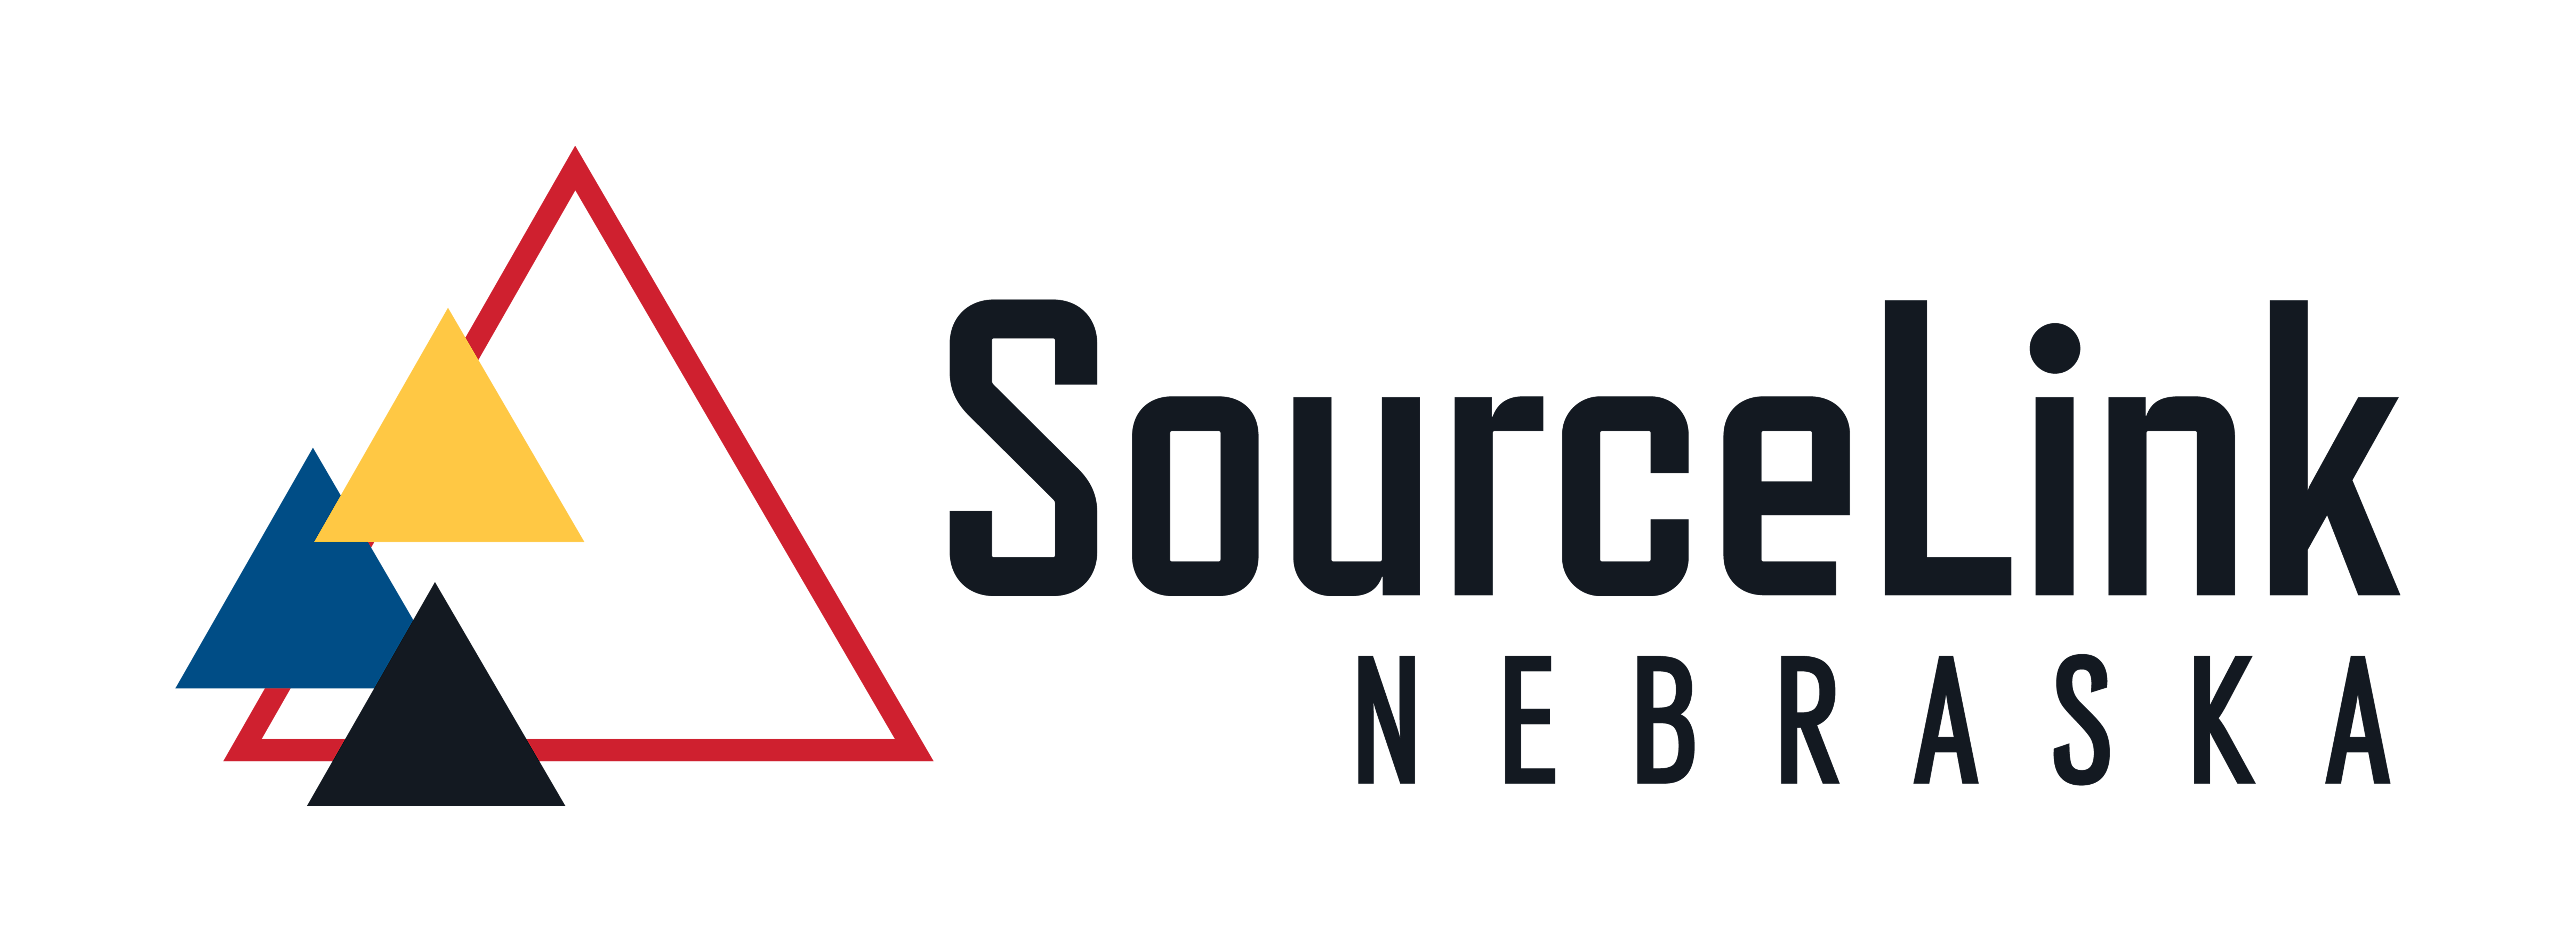 SourceLink Nebraska